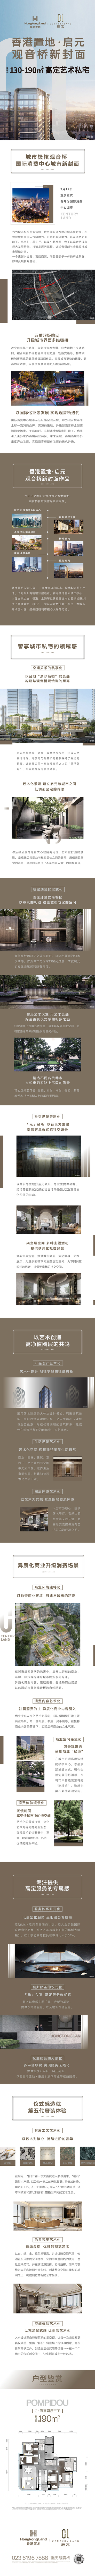 【房産資訊】香港置地·啟元 城市新封面_fororder_微信圖片_20211124140649